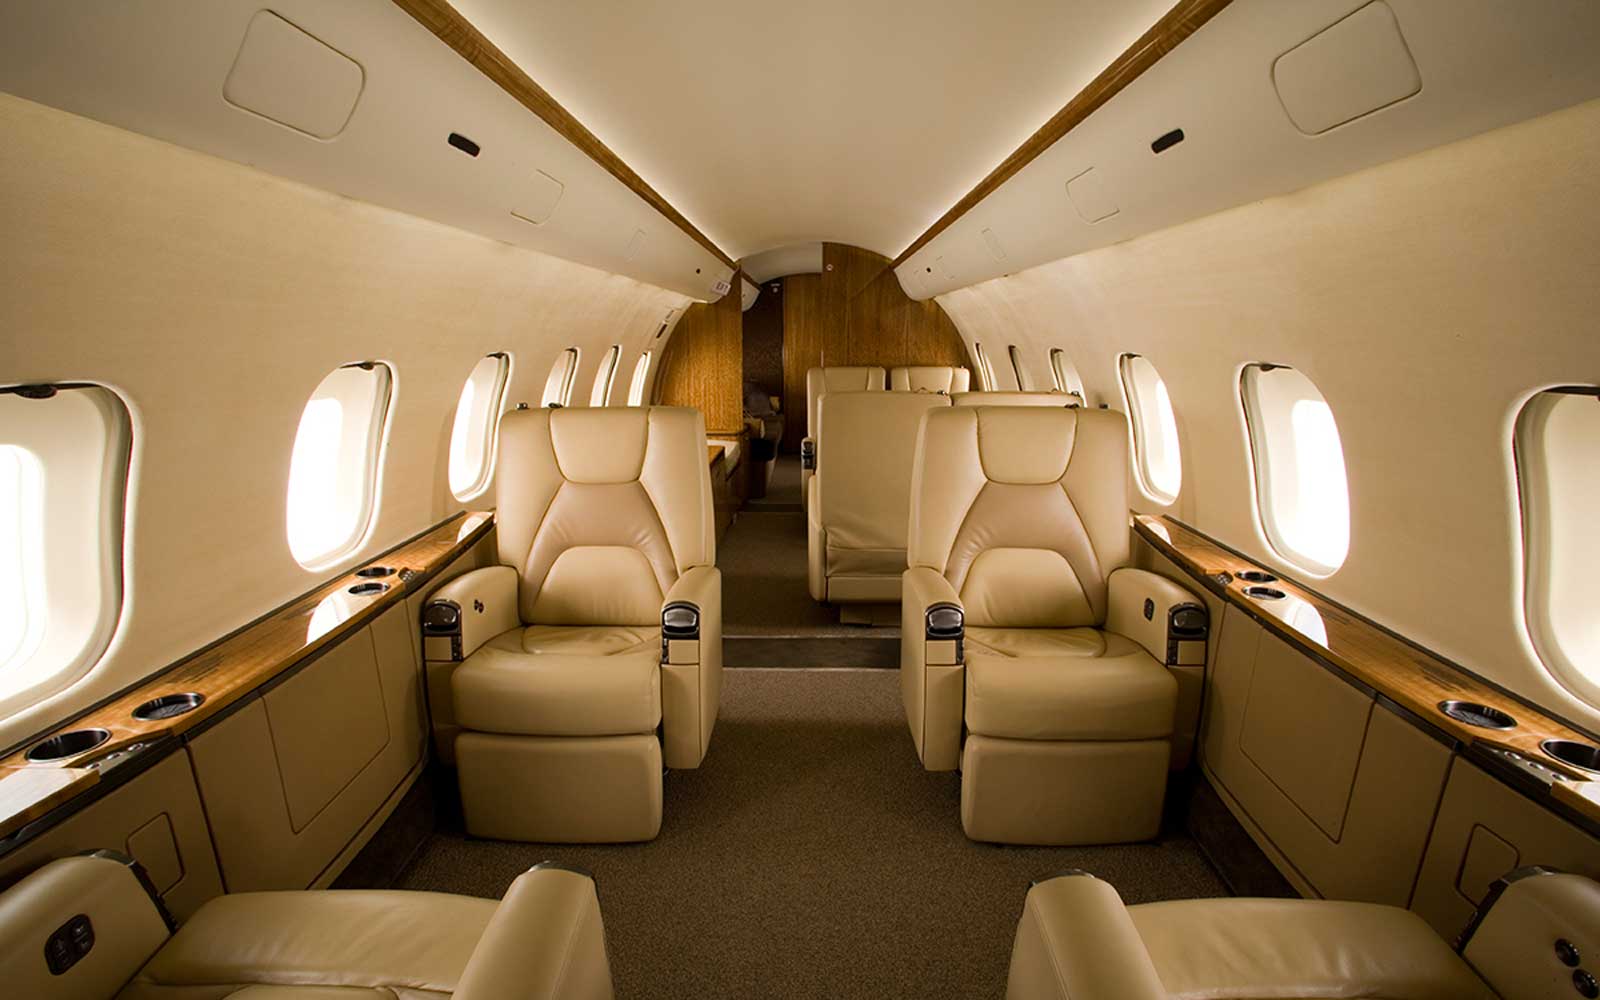 Private jet interior – pole to pole